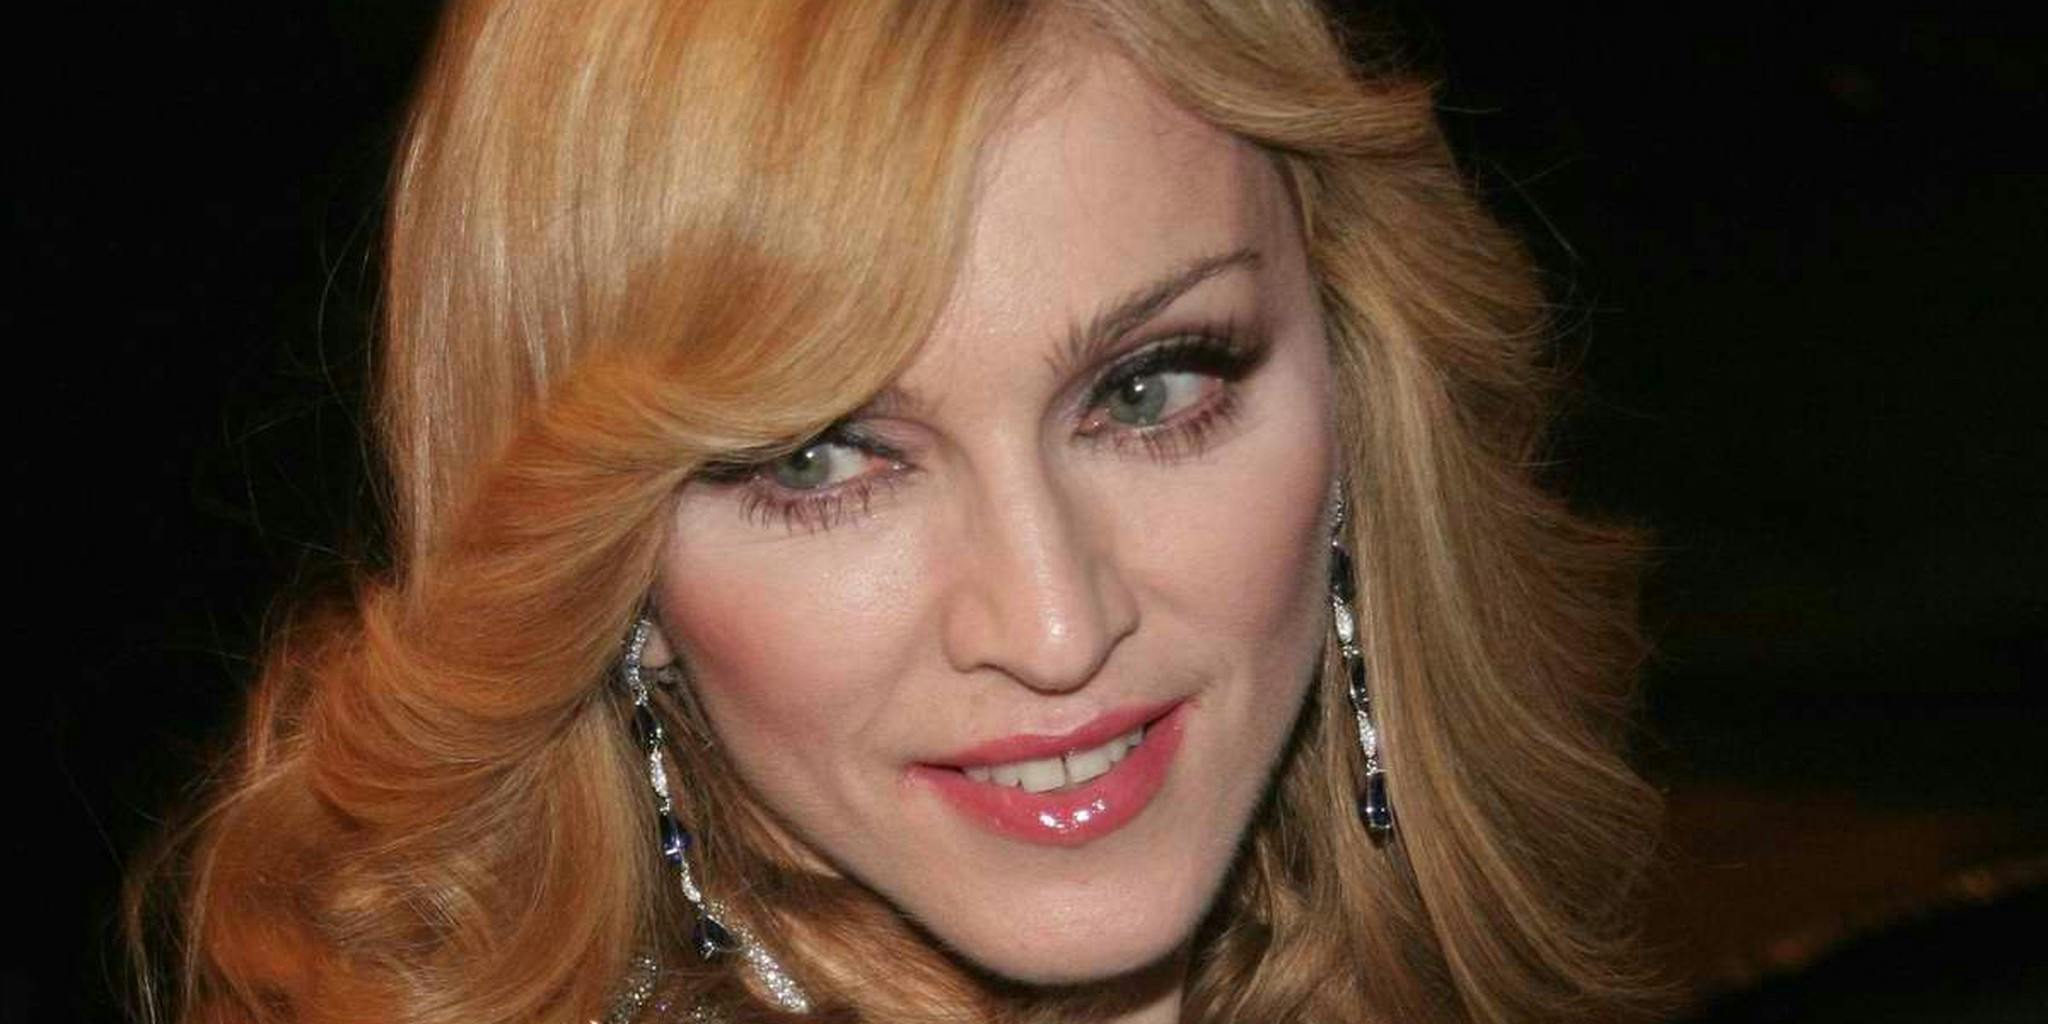 Madonna - wide 9